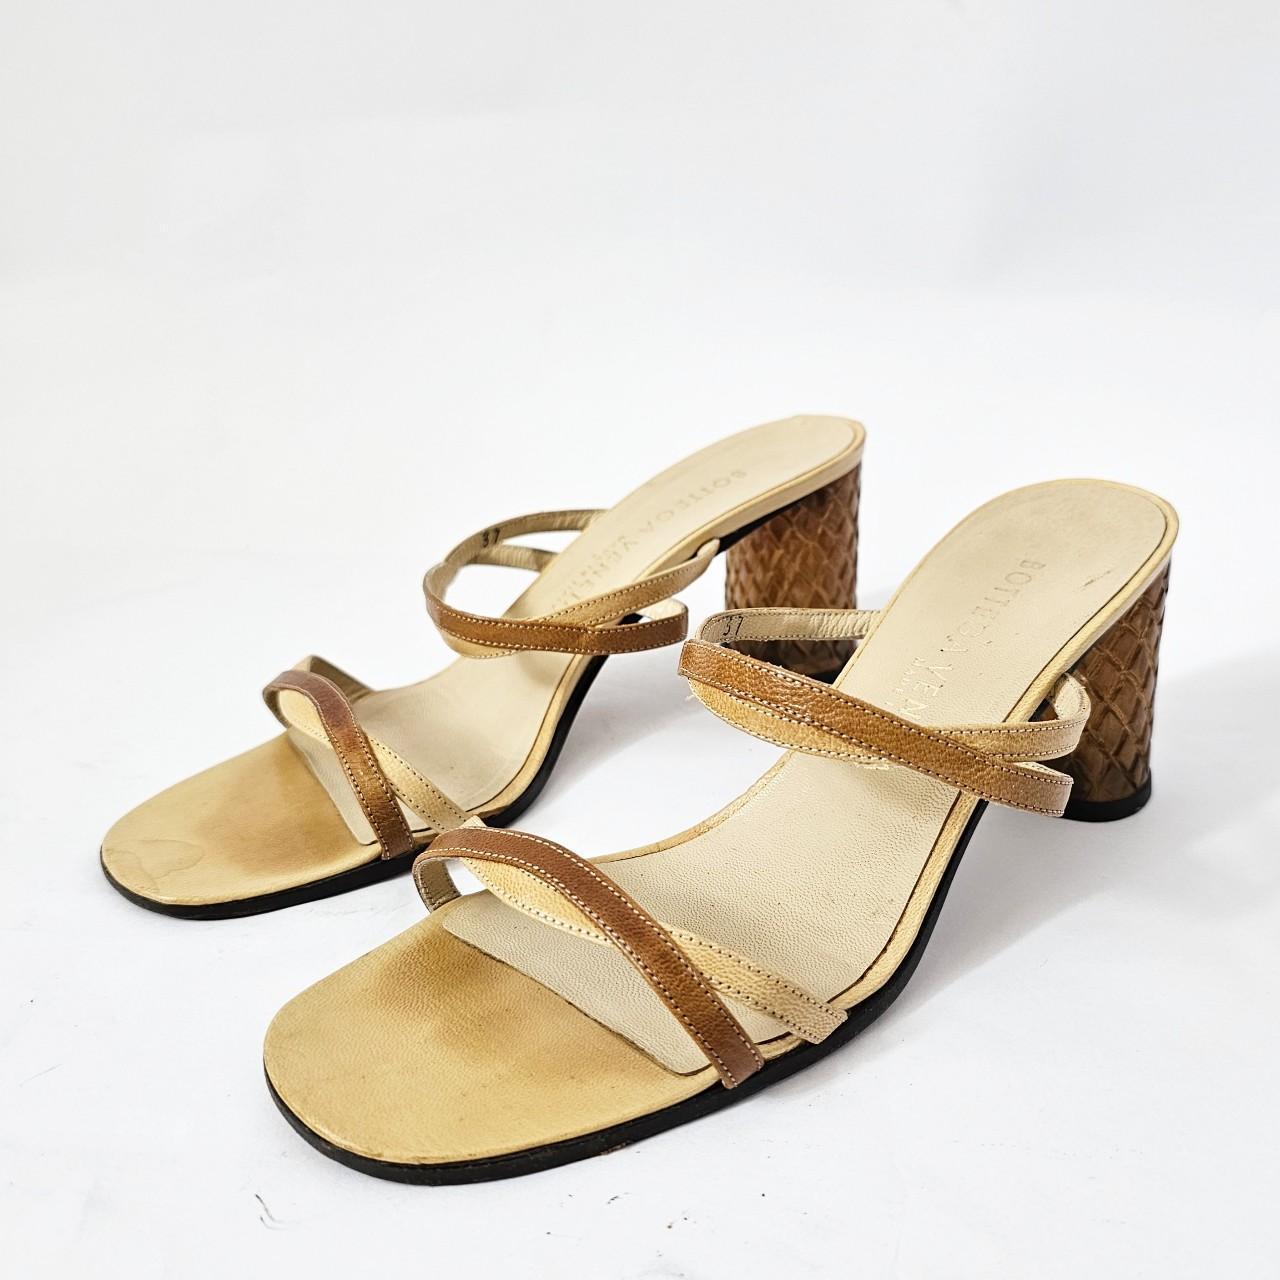 Bottega Veneta Women's Tan and Yellow Sandals - 2